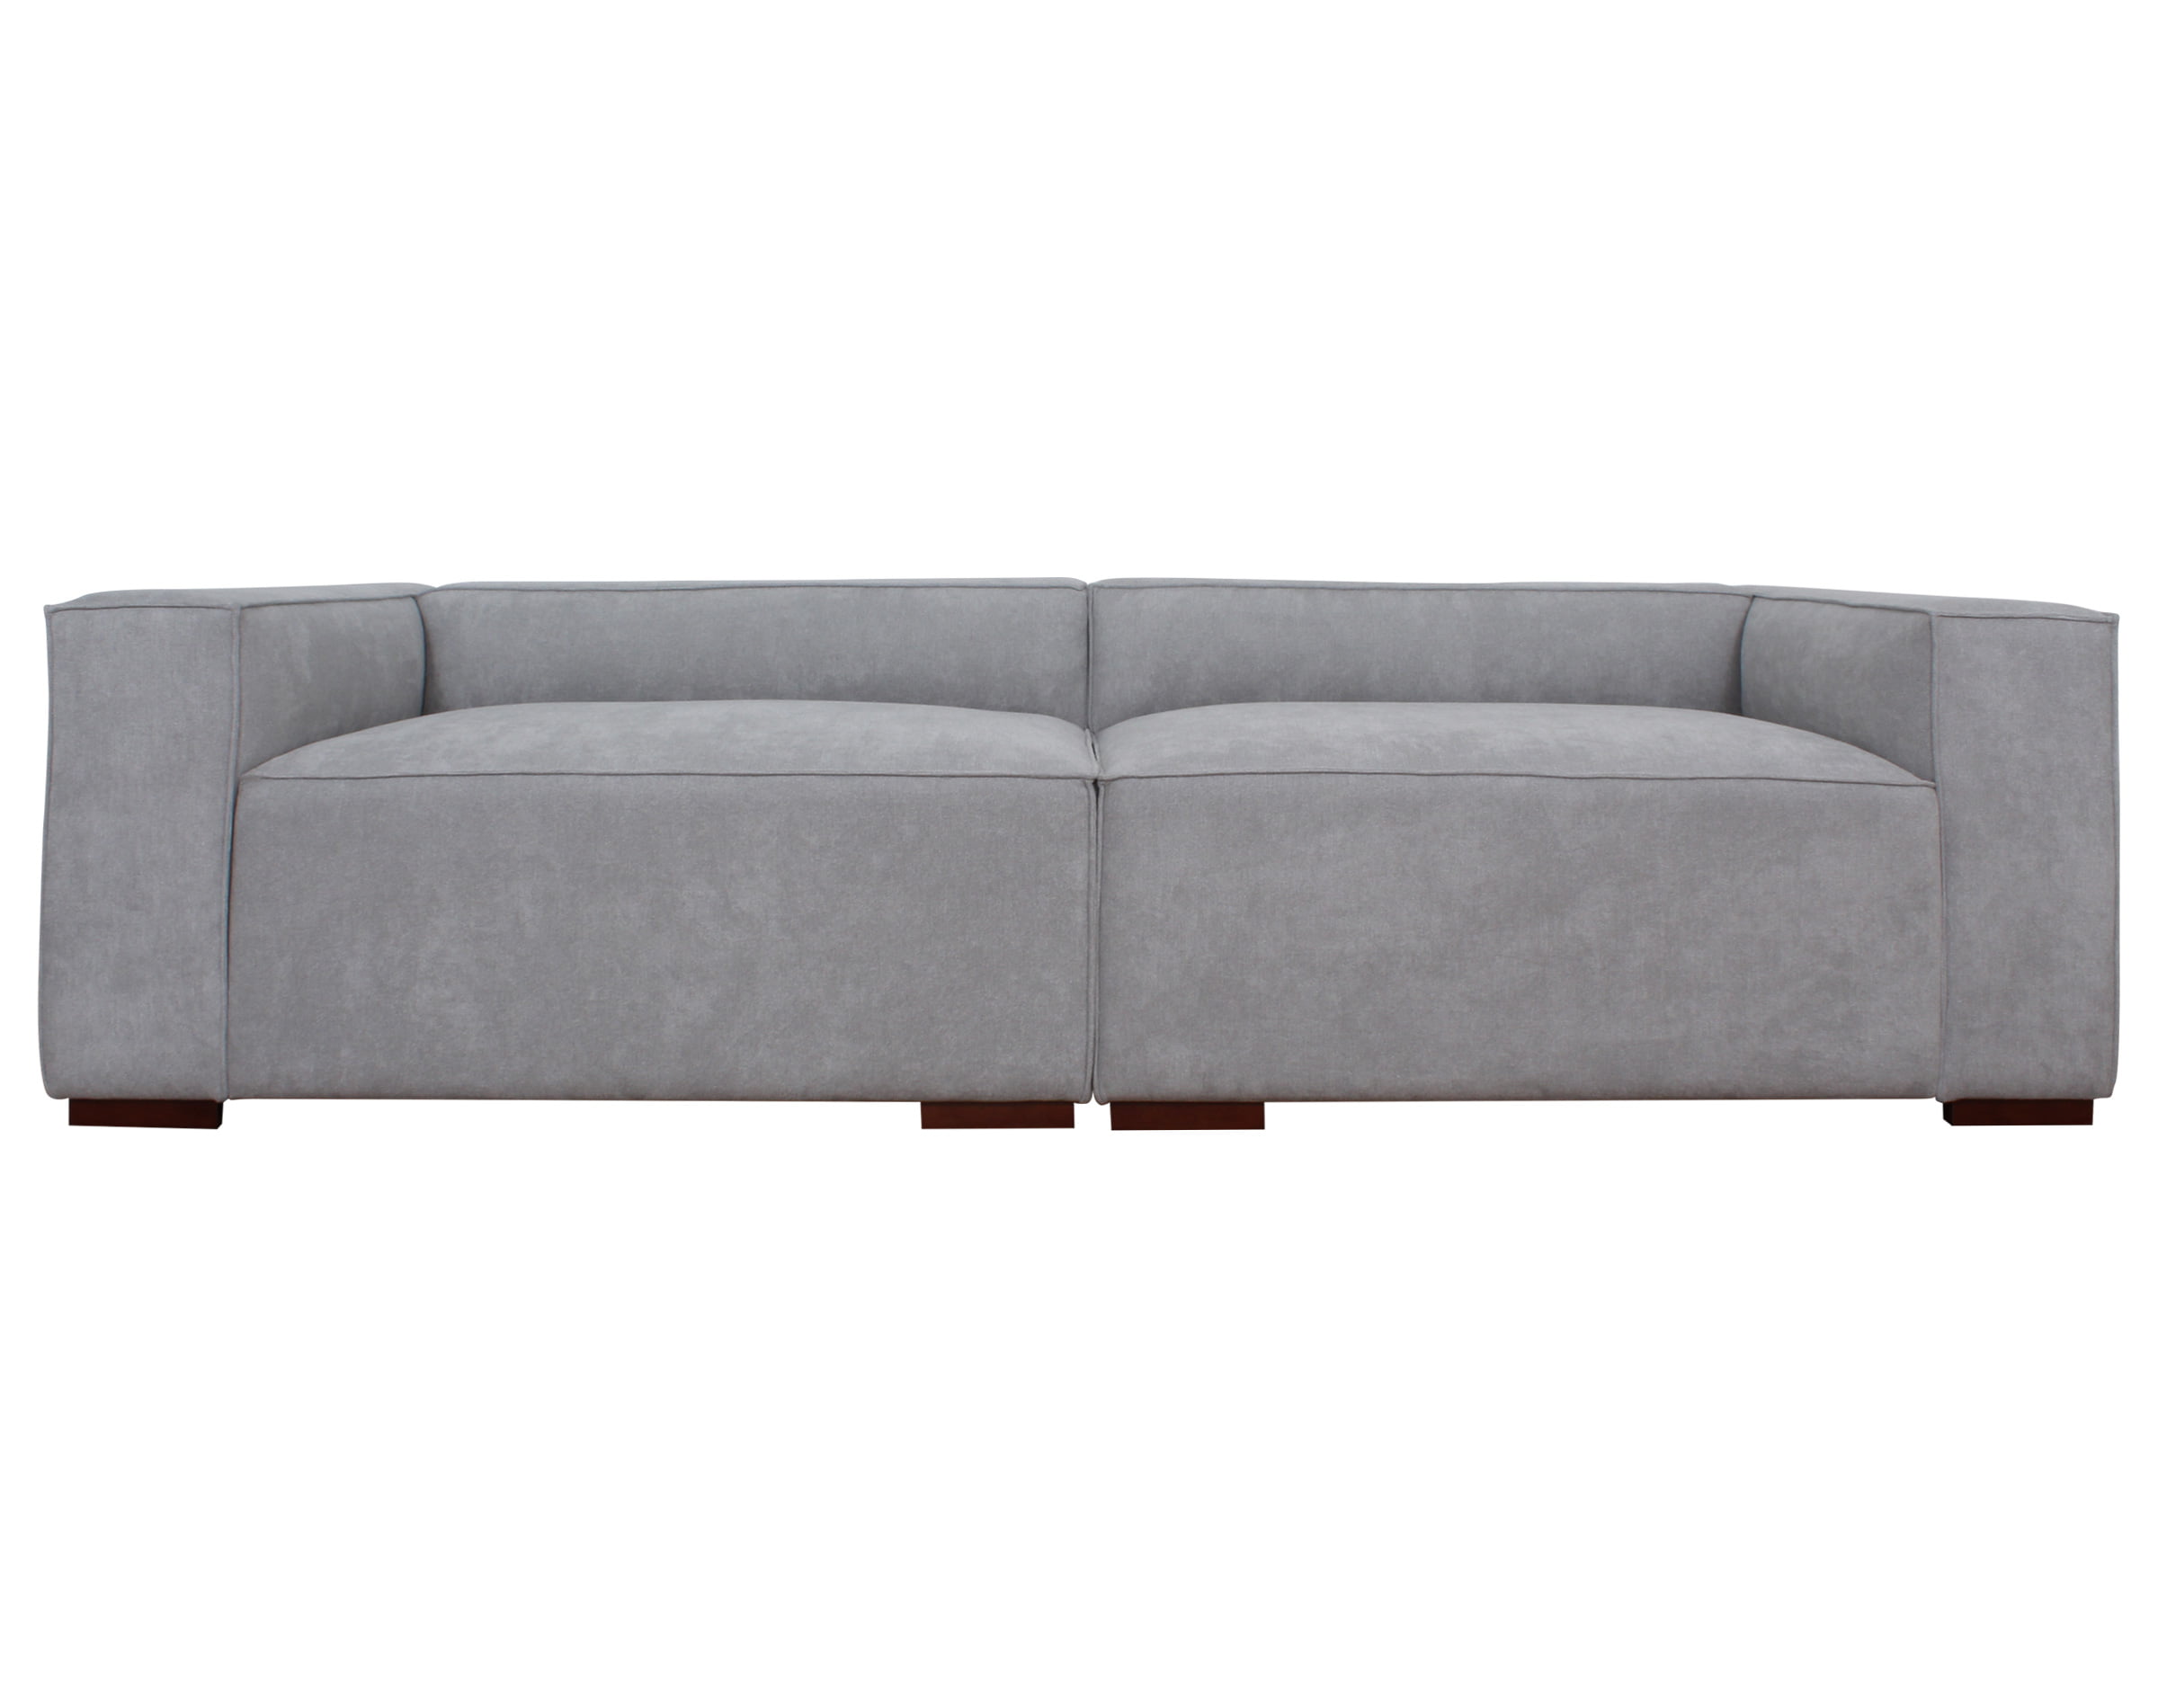 sofa modular pespunte dresde frente